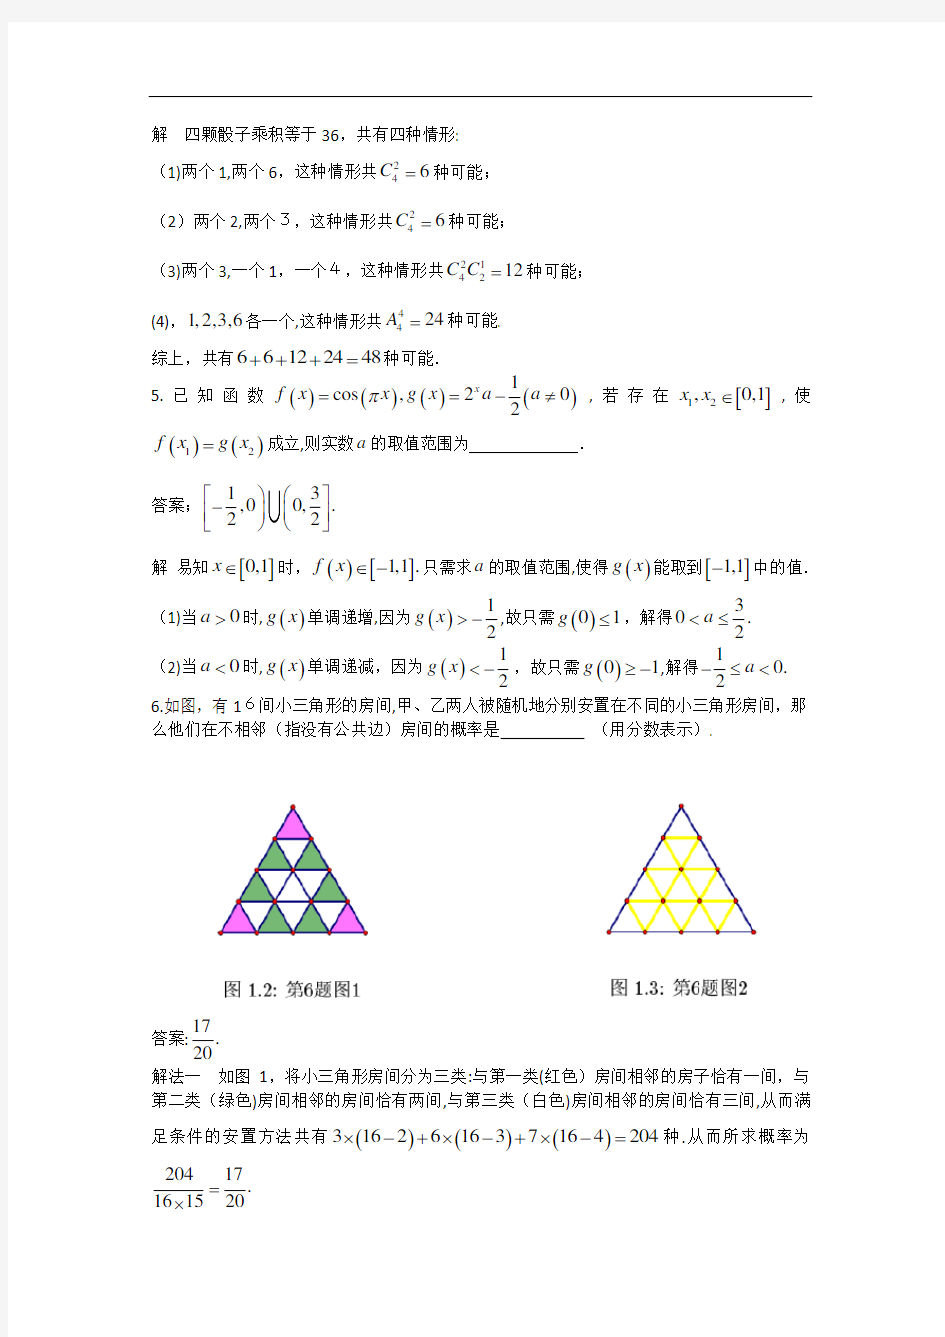 2016年上海市高中数学竞赛试题及标准答案